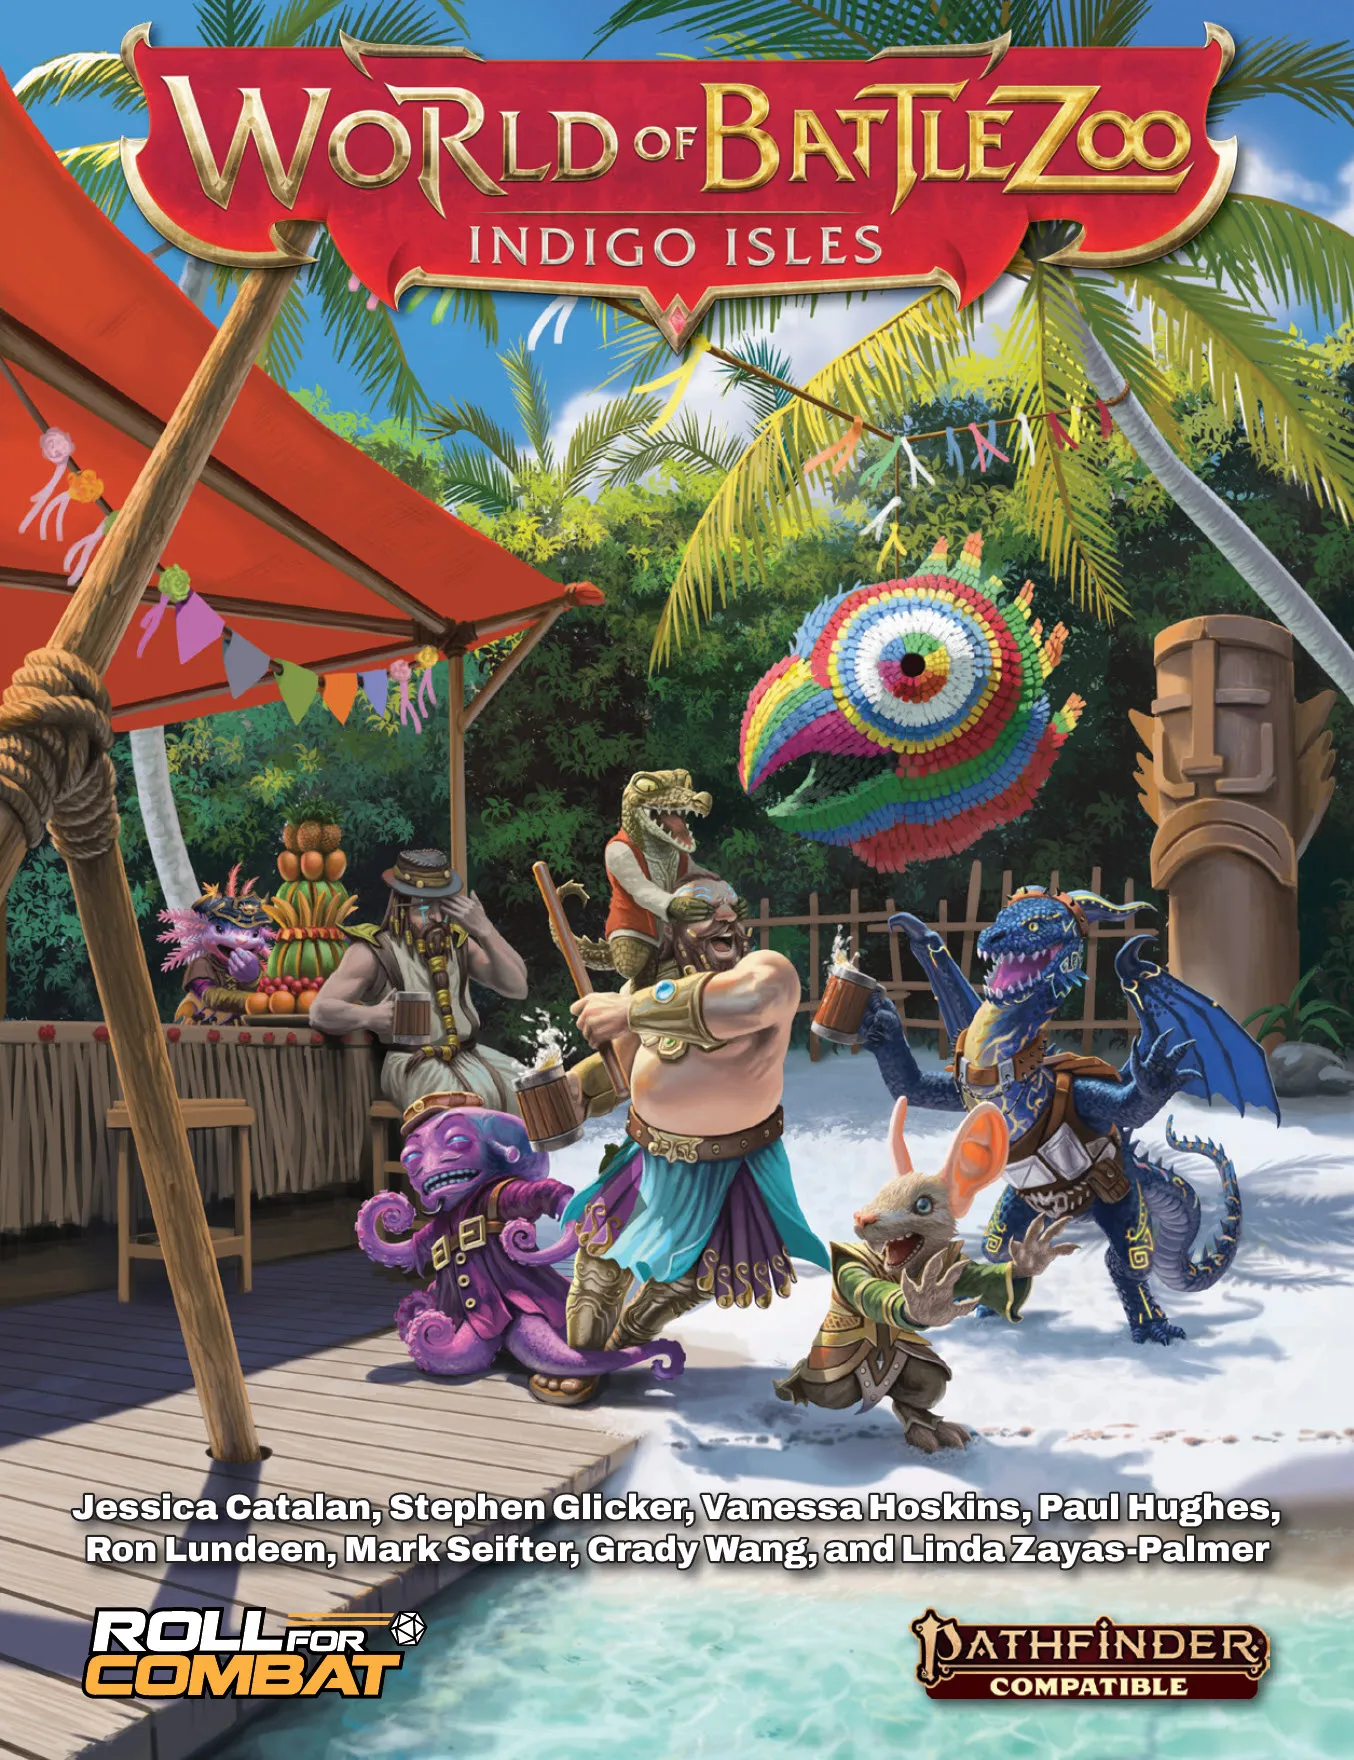 World of Battlezoo: Indigo Isles